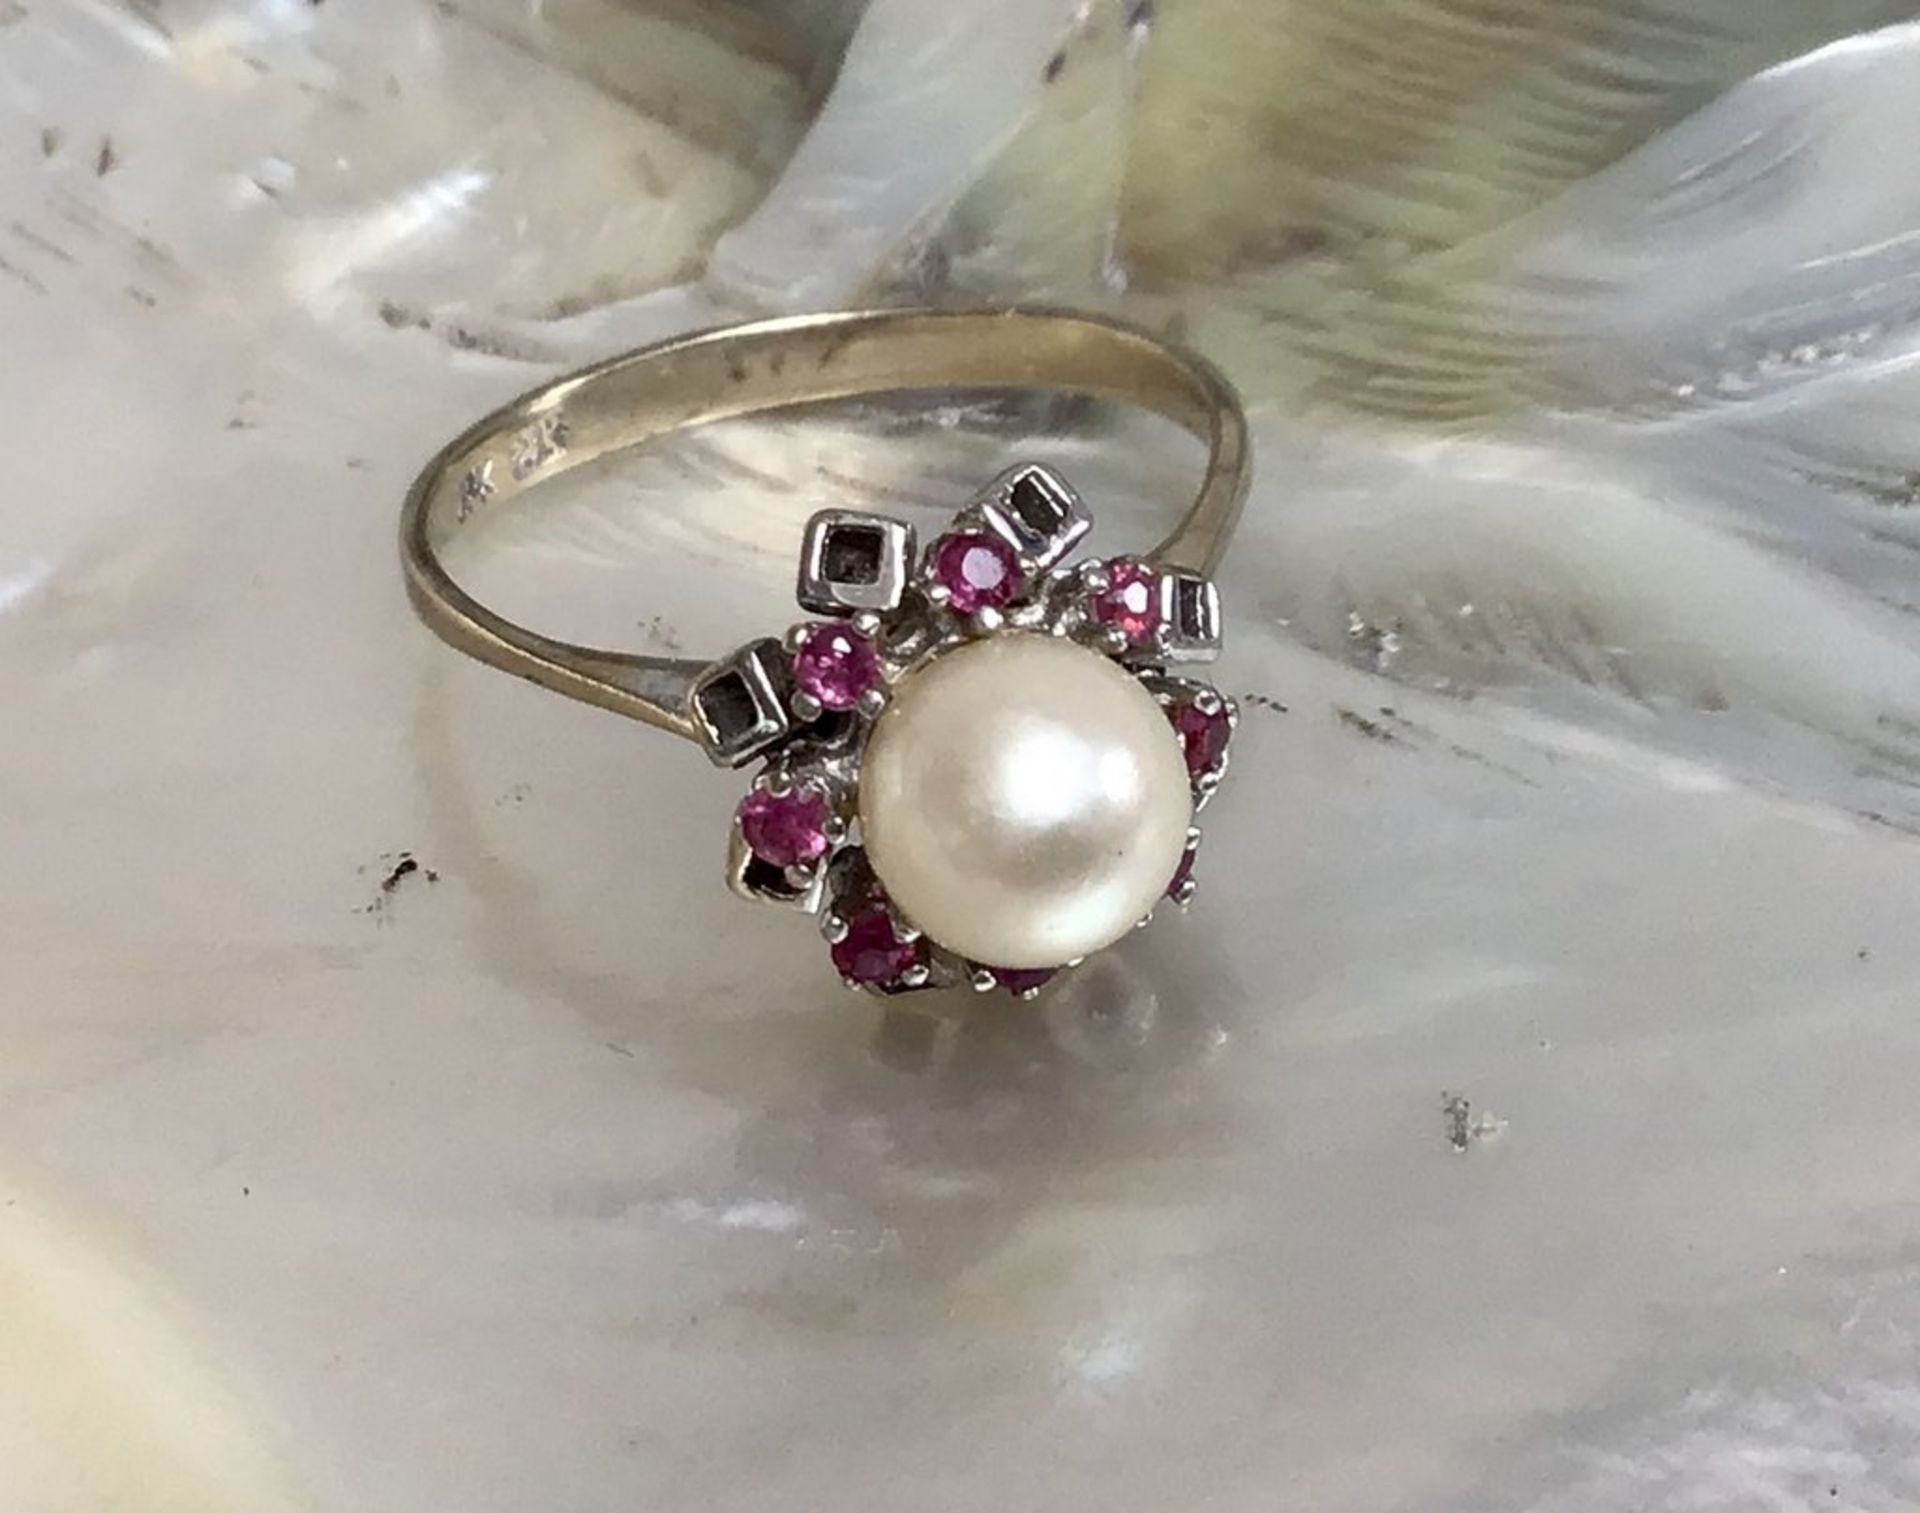 Perlen- Rubin-Damenring WG 585 punz., besetzt mit 8 Stk. Rubinen in Krappenfassung und einer Perle D